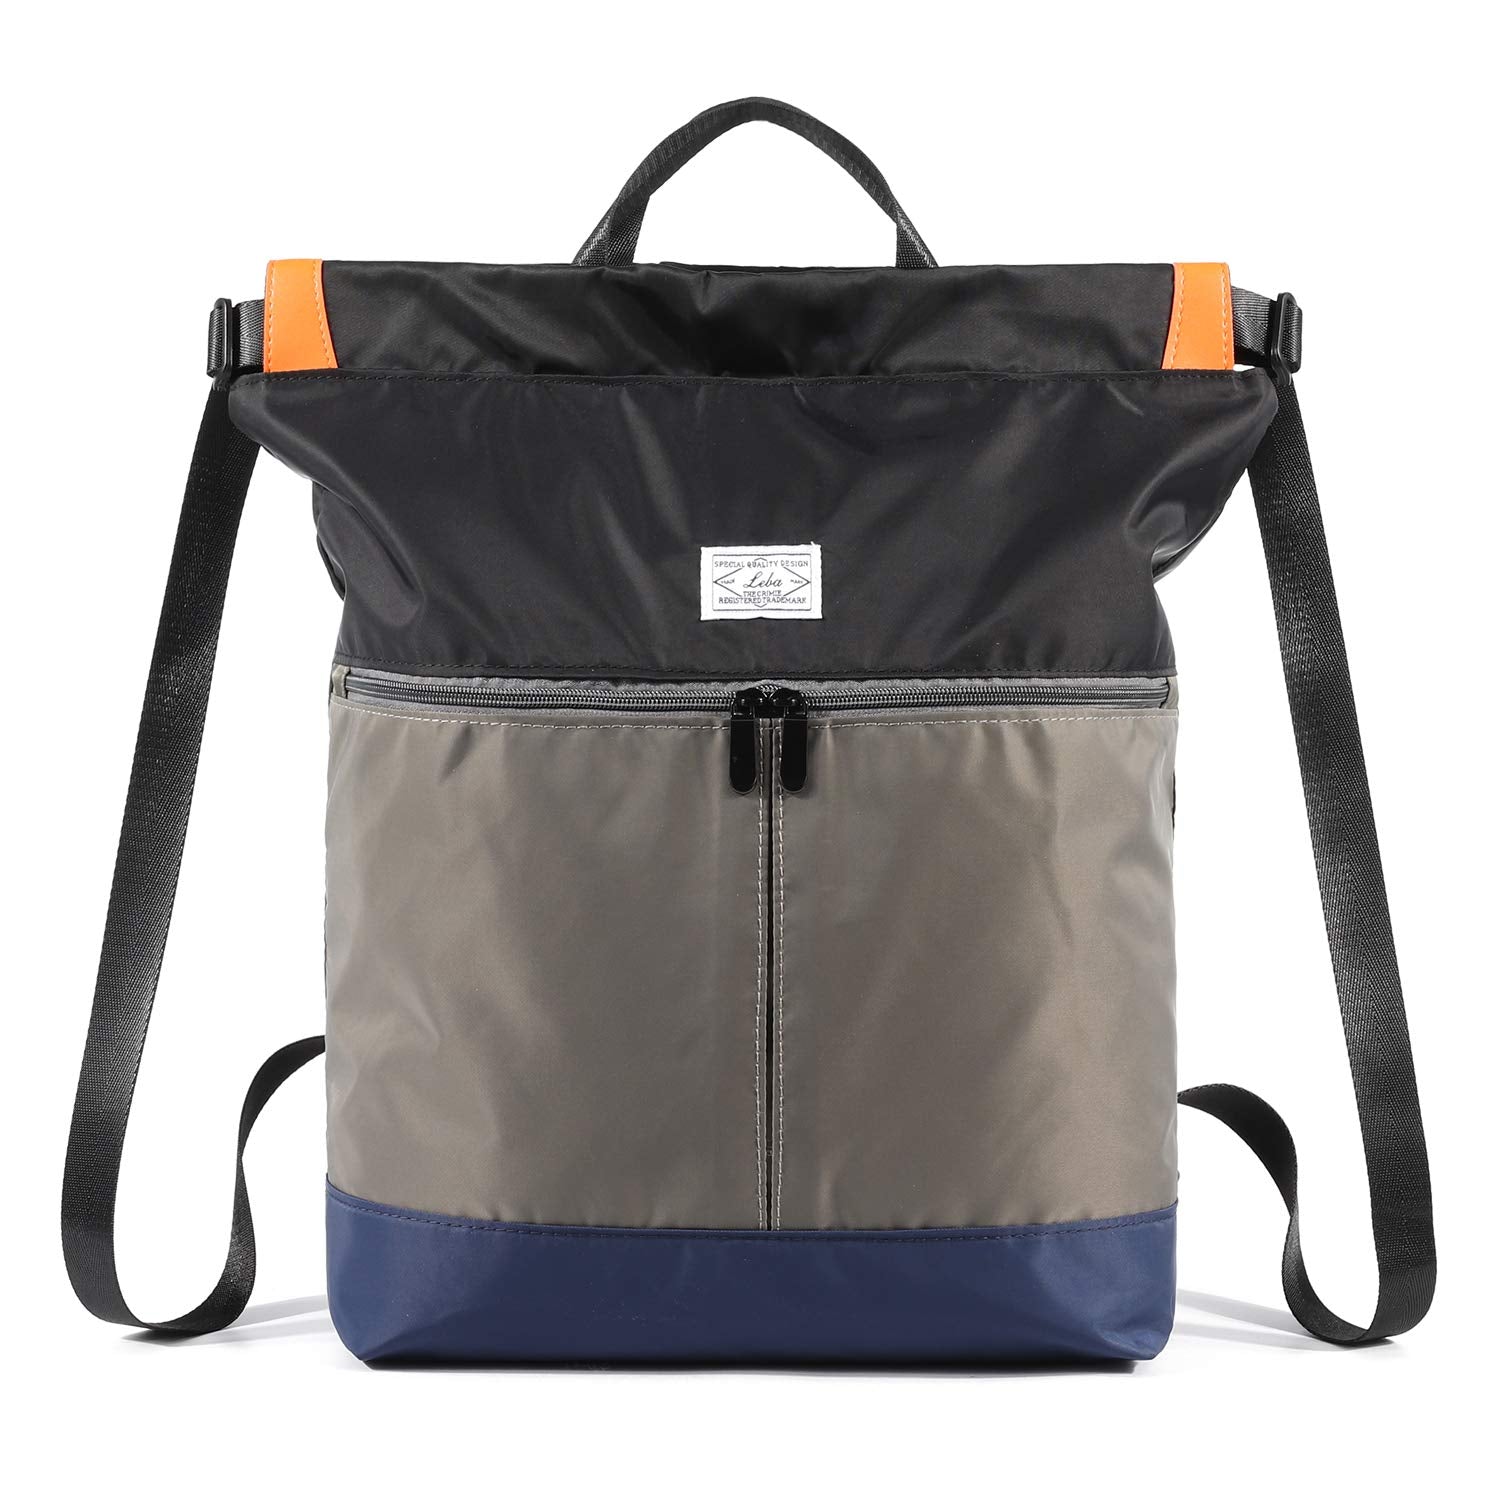 WANDF Drawstring Backpack WF6033 String Bag Sackpack Cinch online shop